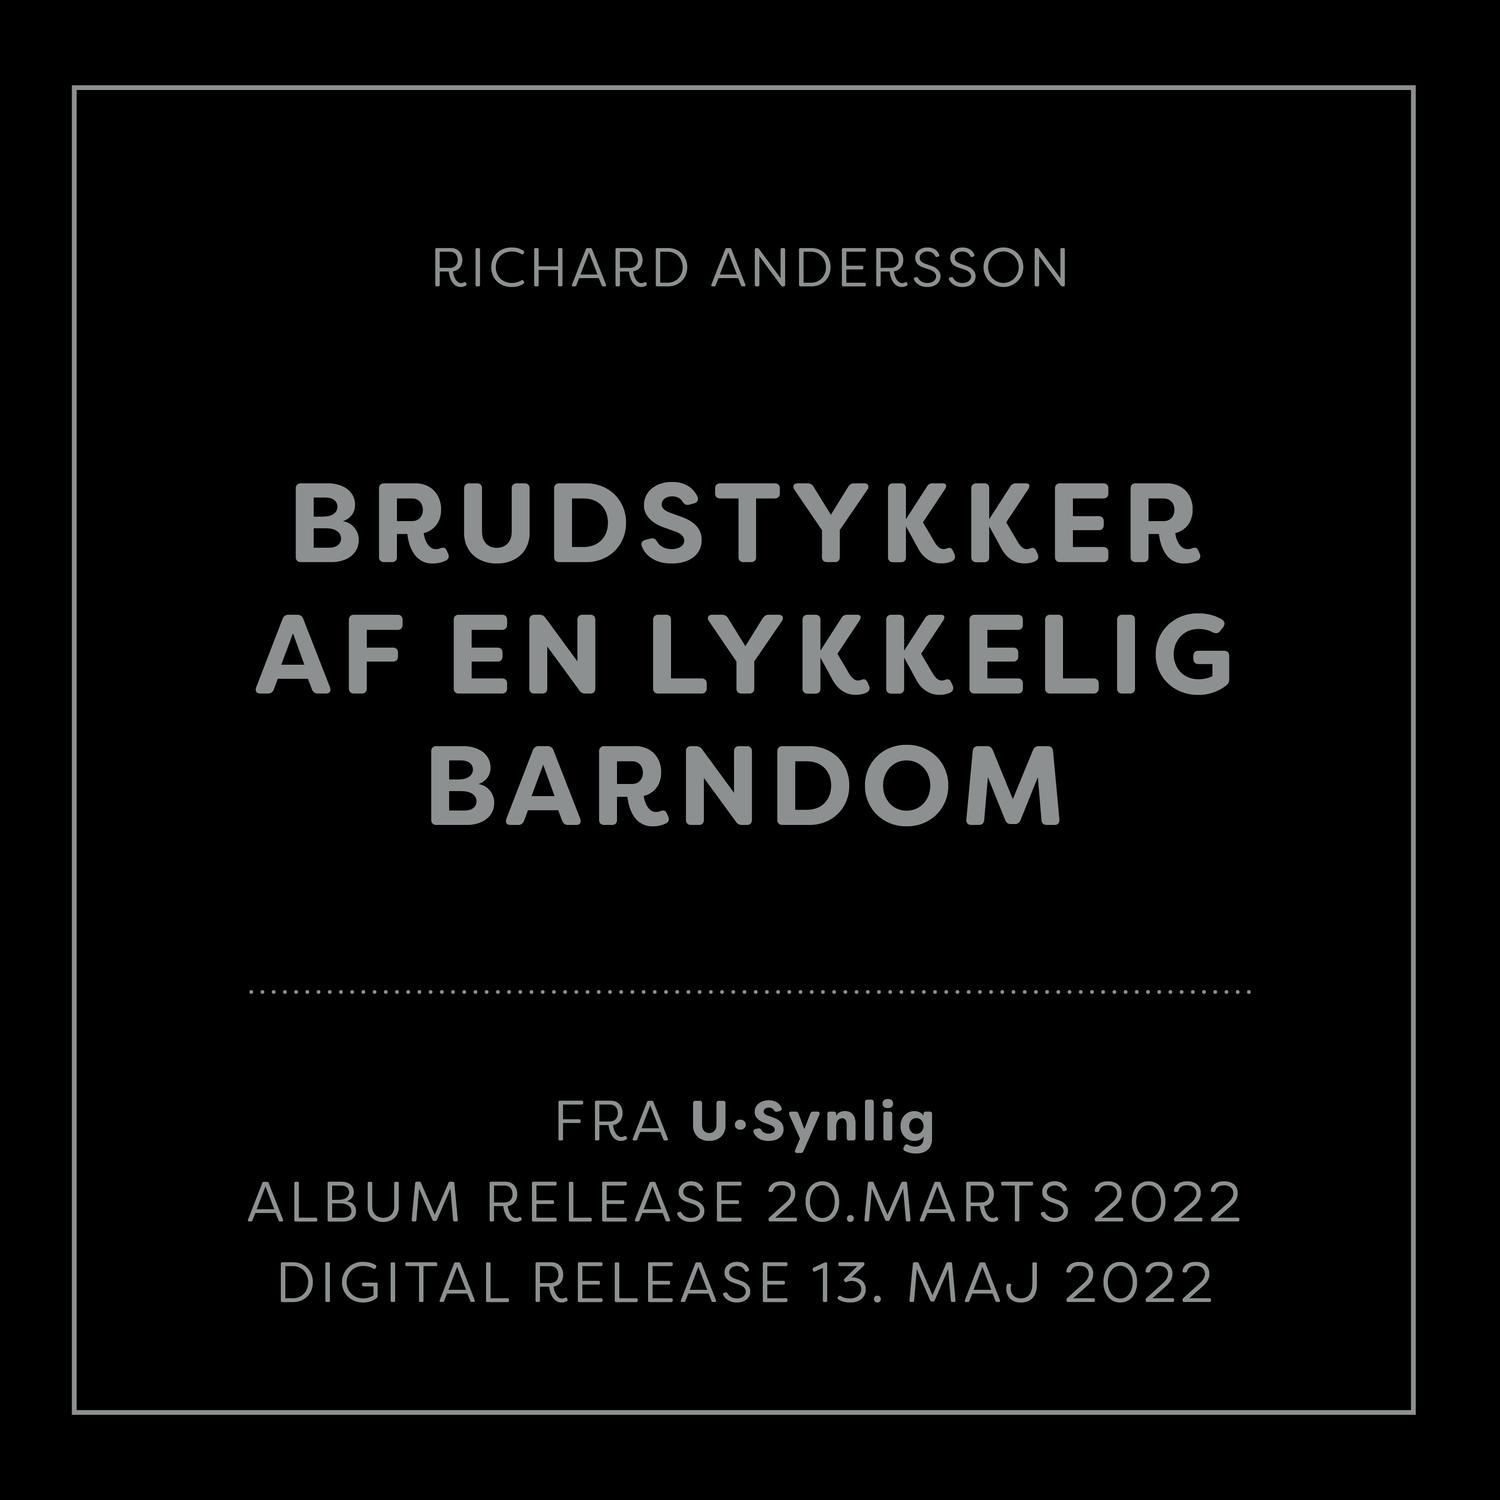 Richard Andersson - Brudstykker af en lykkelig barndom